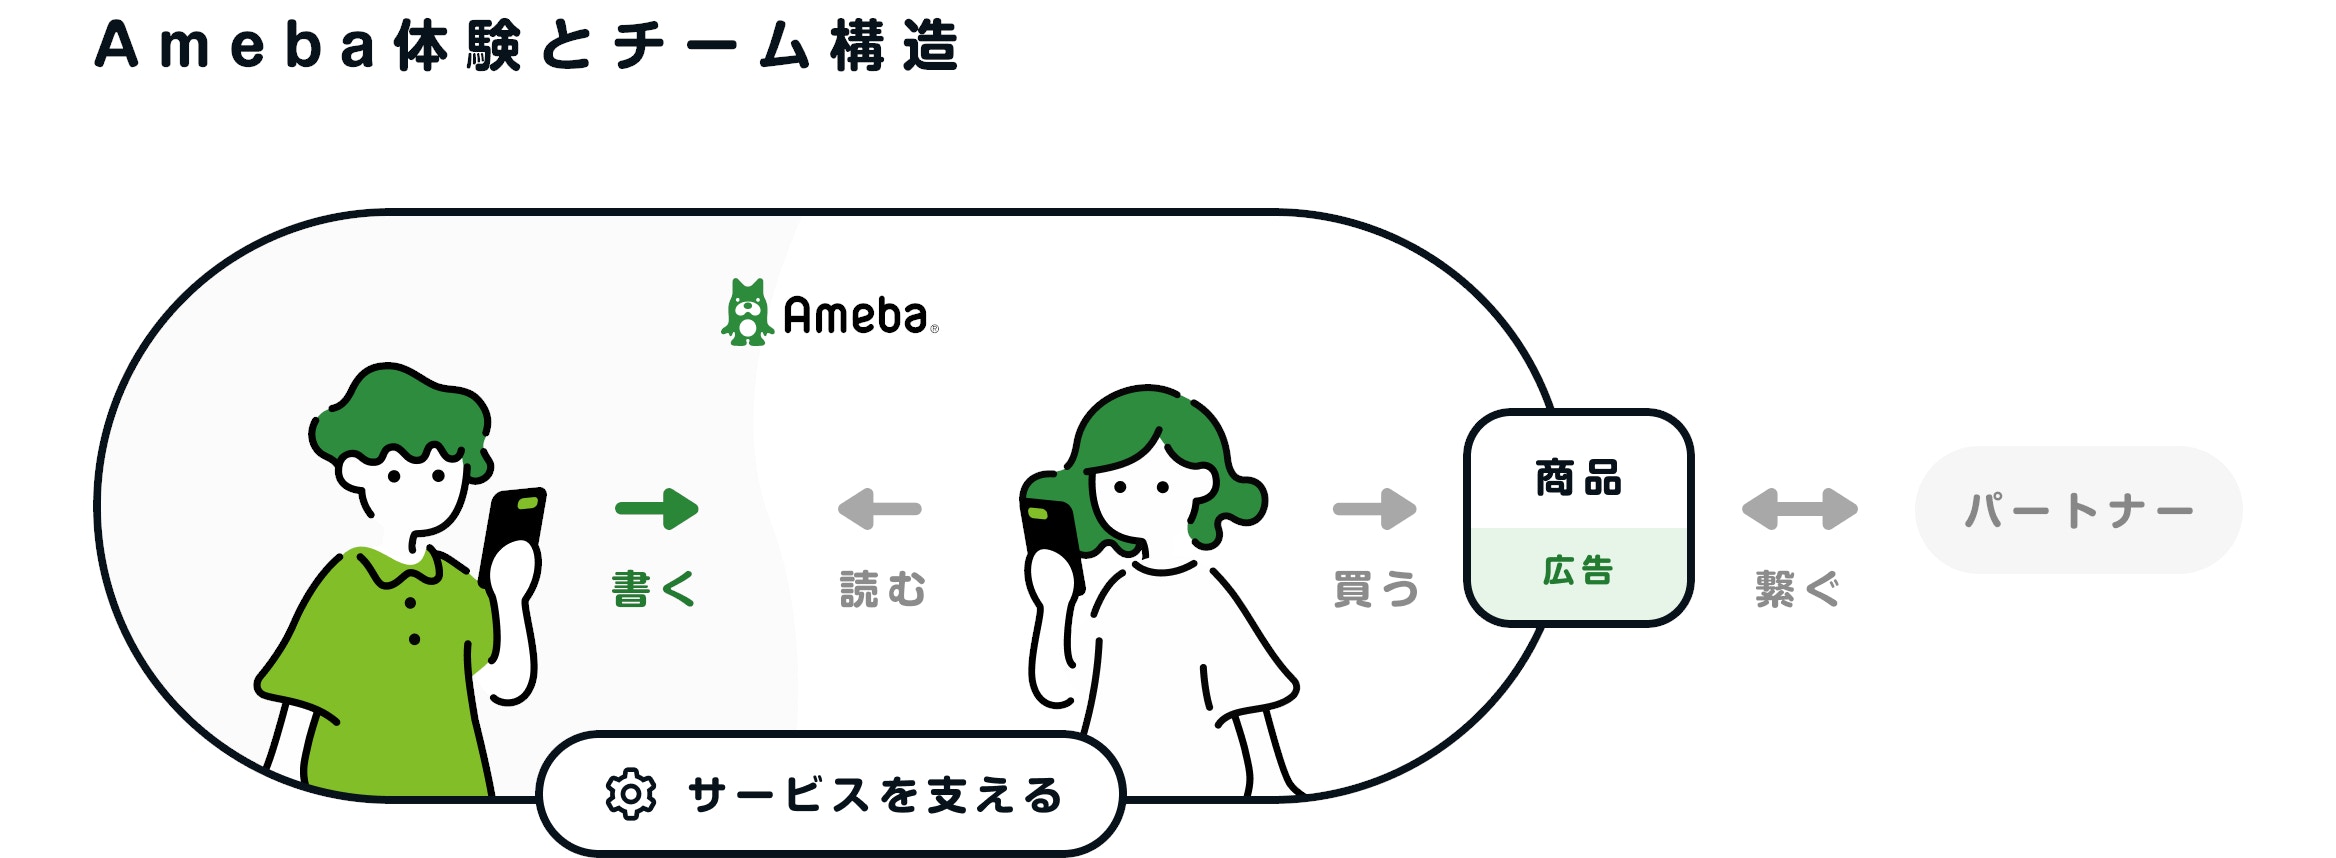 Amebaの体験とチーム構造を表す図。Amebaの「書く」「読む」体験を作るチーム、広告や商品を「買う」体験を担うチーム、サービスを支えるチームがあります。